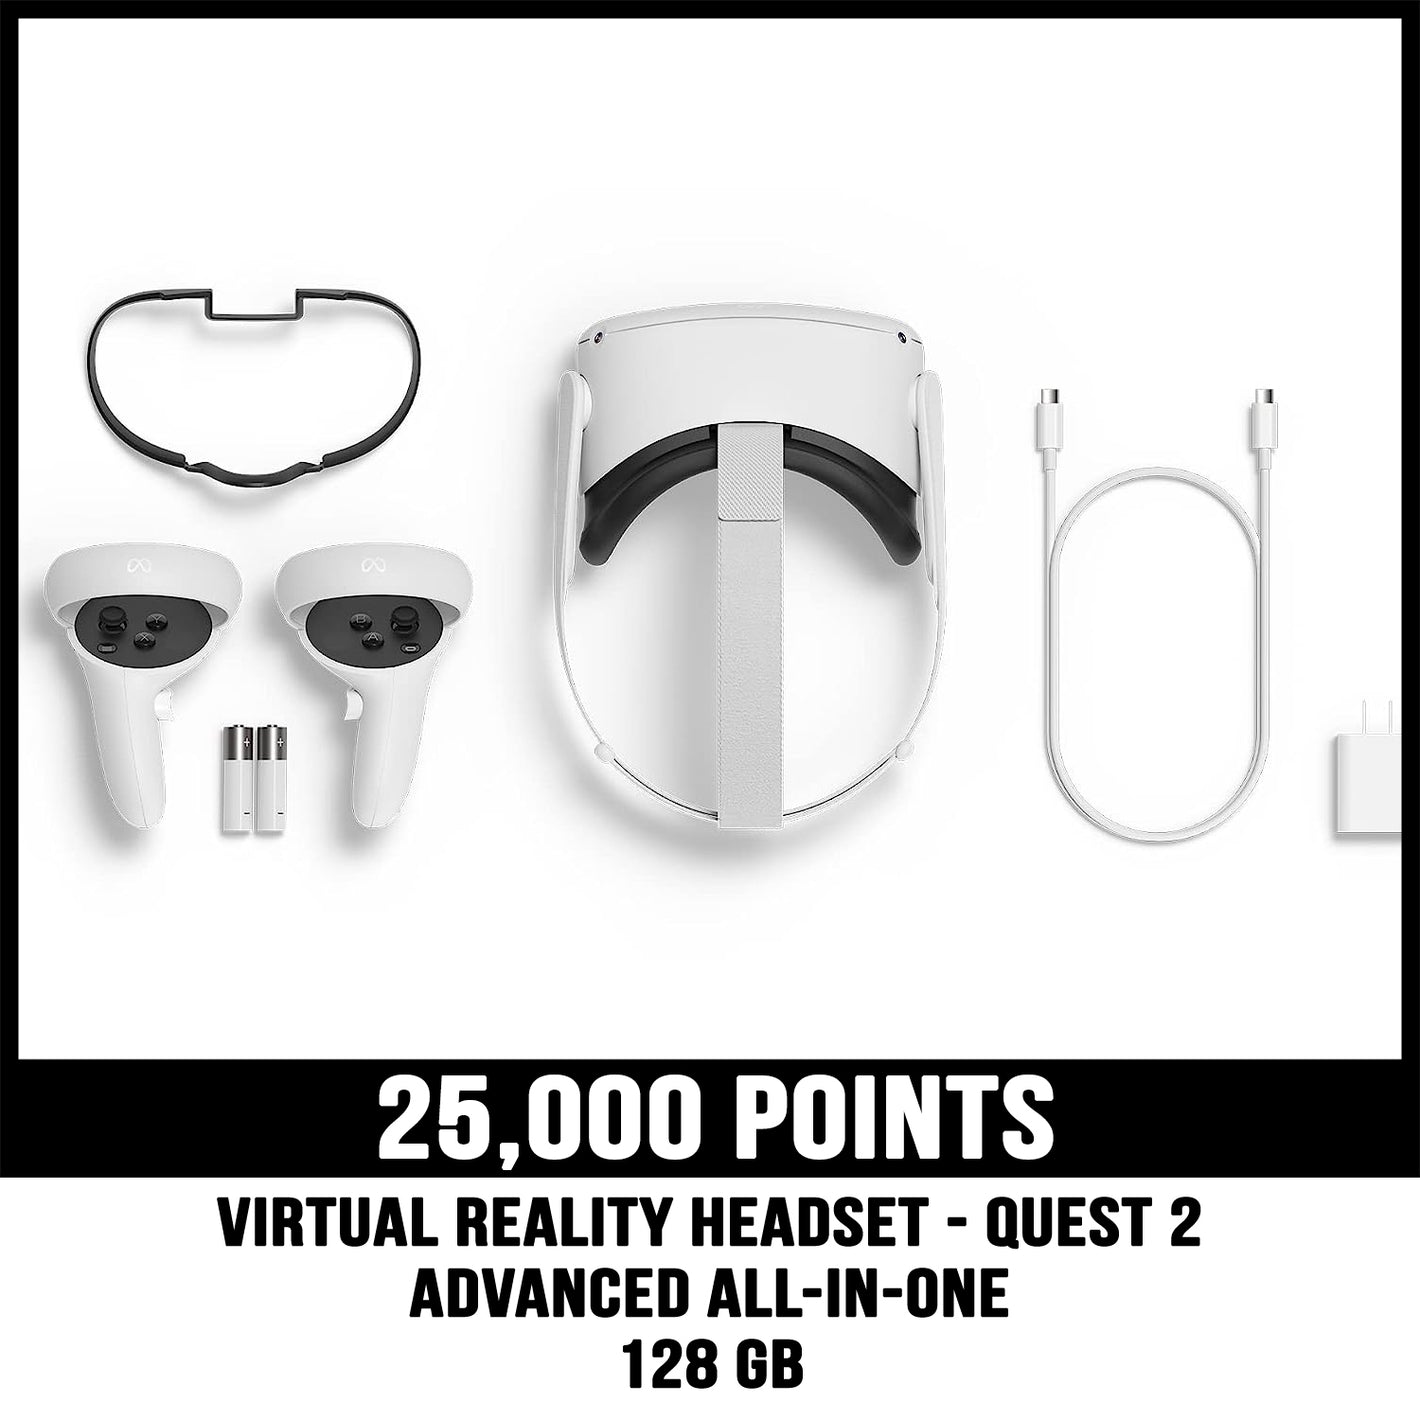 Quest 2 VR bundle prize for 25000 points